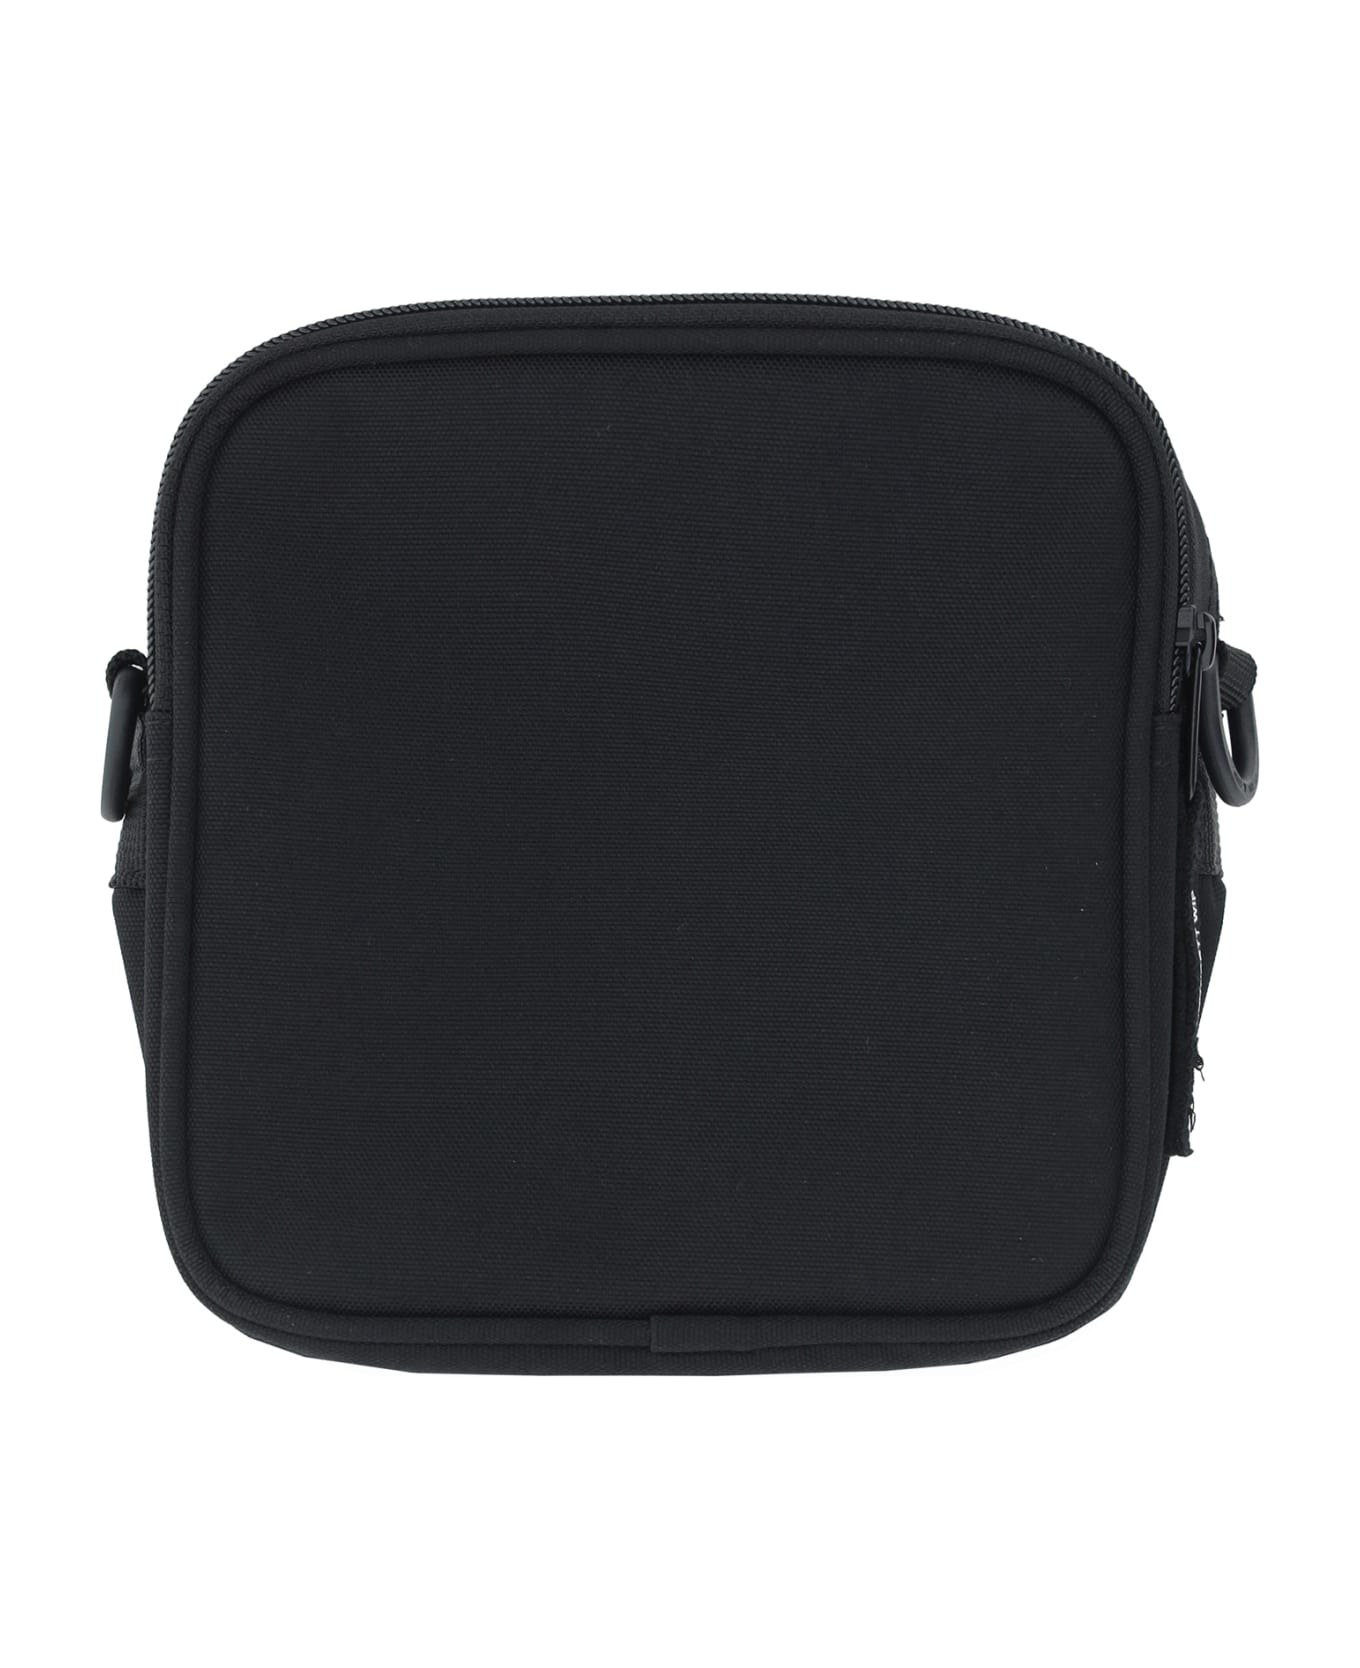 Carhartt Essentials Shoulder Bag - Black